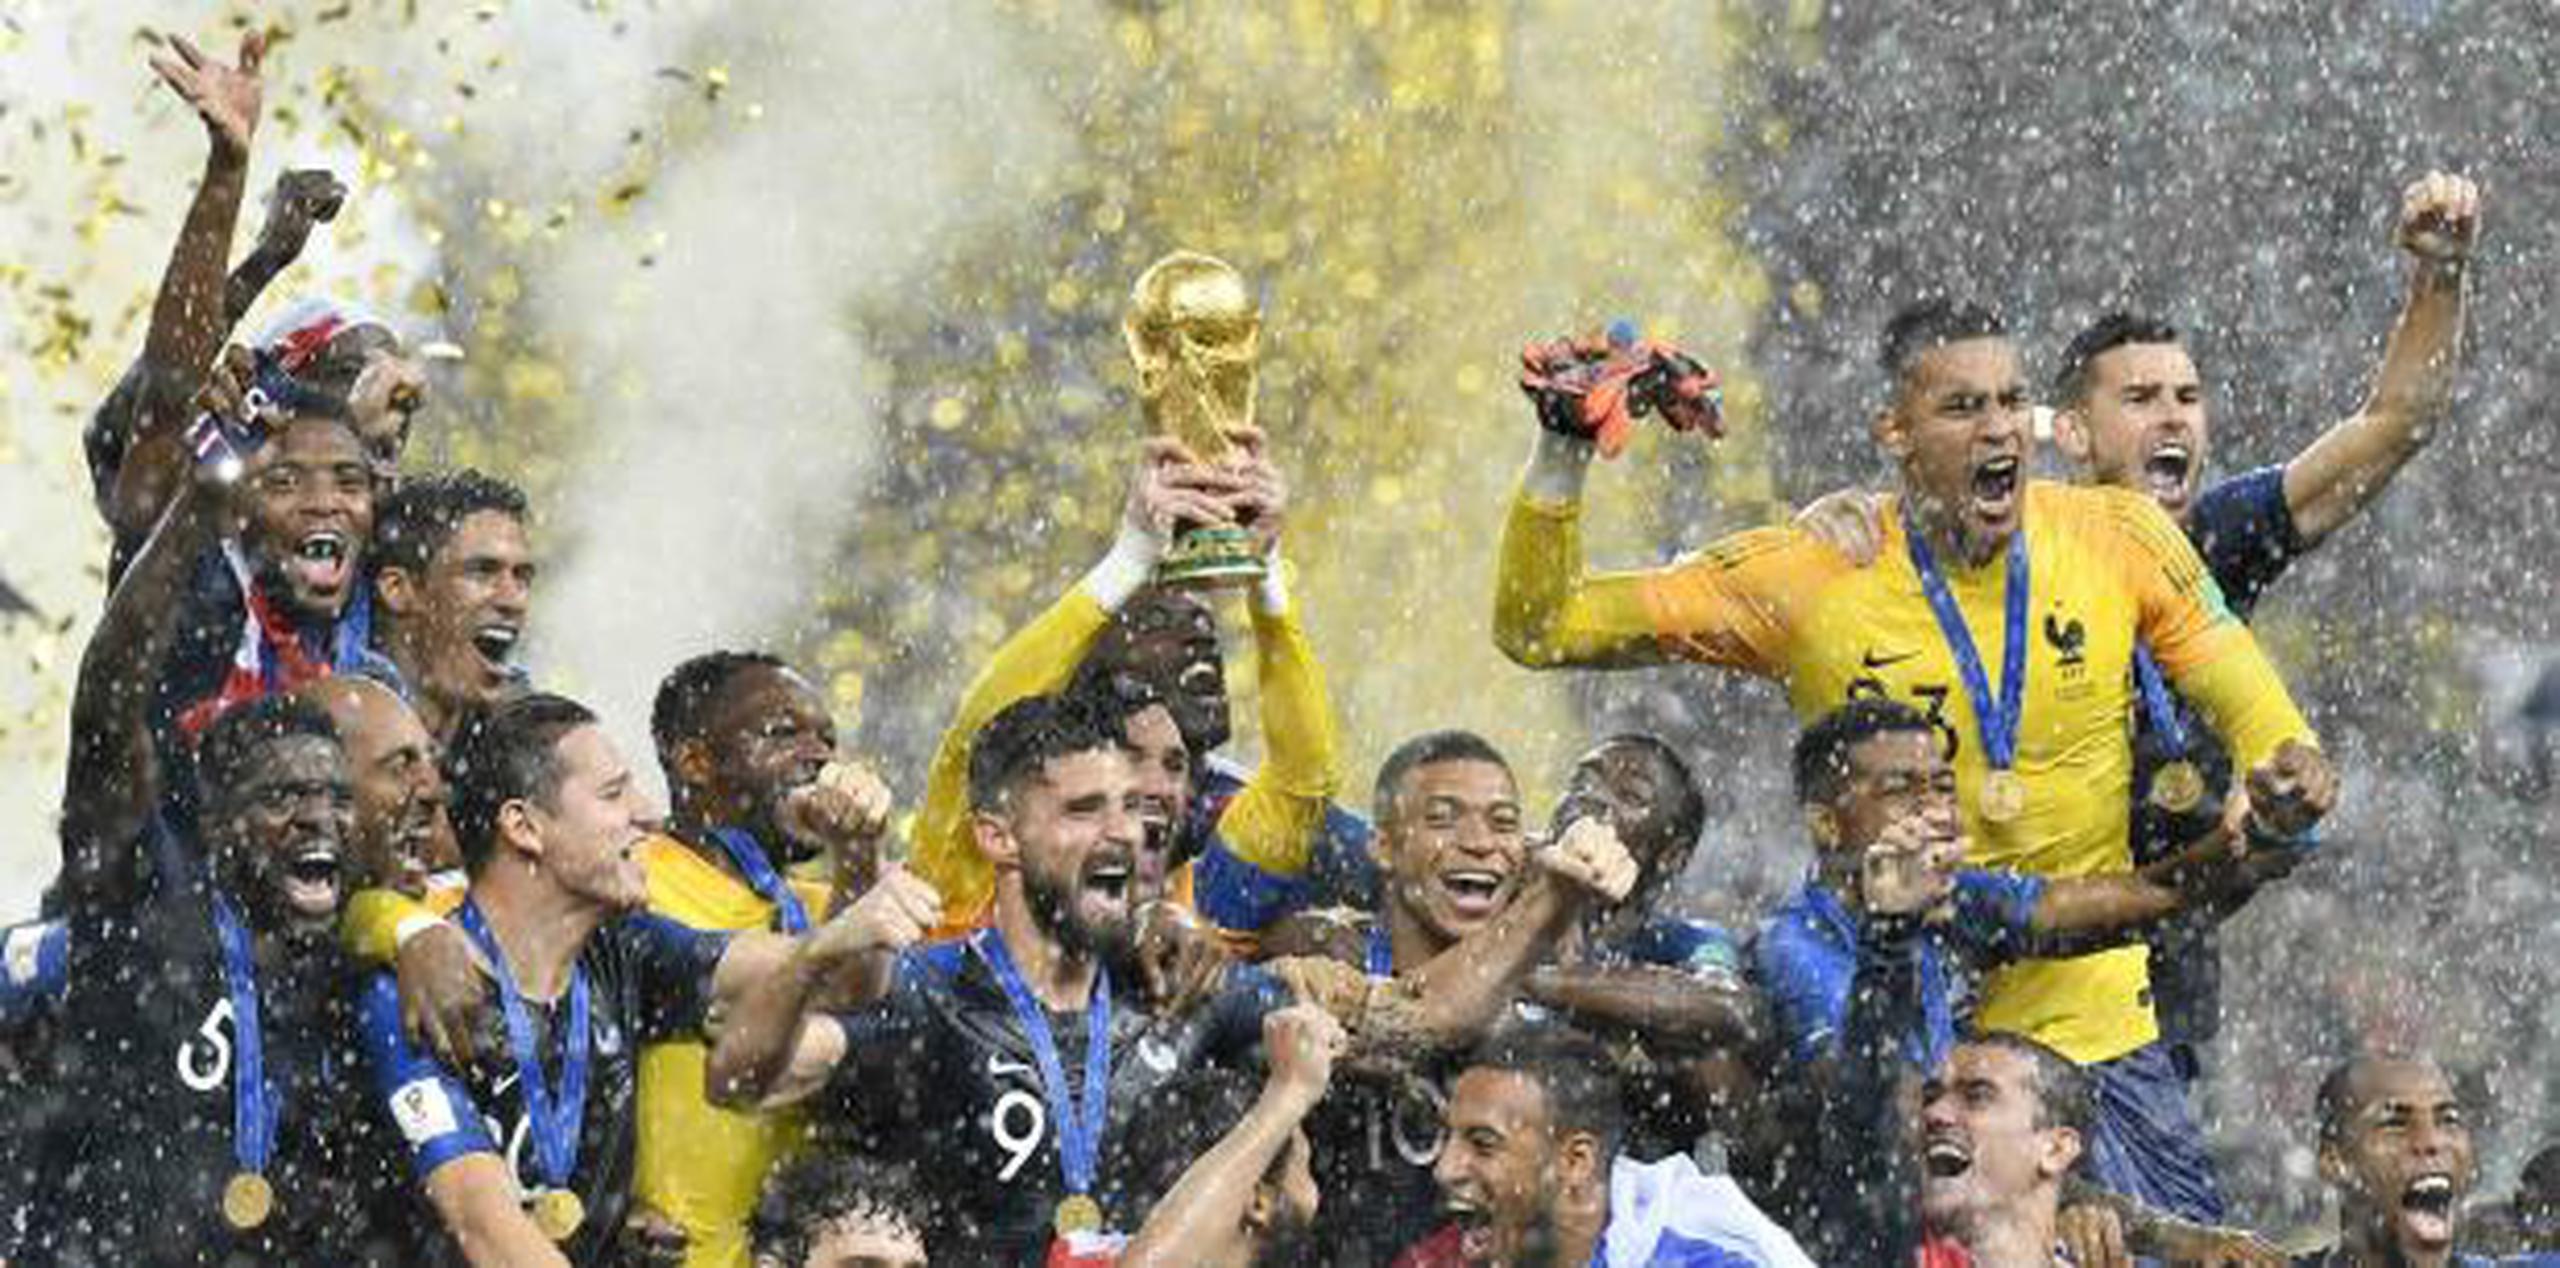 Otros dos bloques de países, uno sudamericano y otro en el norte de Europa, se han estado rumorando. Francia ganó la copa en el mundial de Rusia 2018. (archivo)